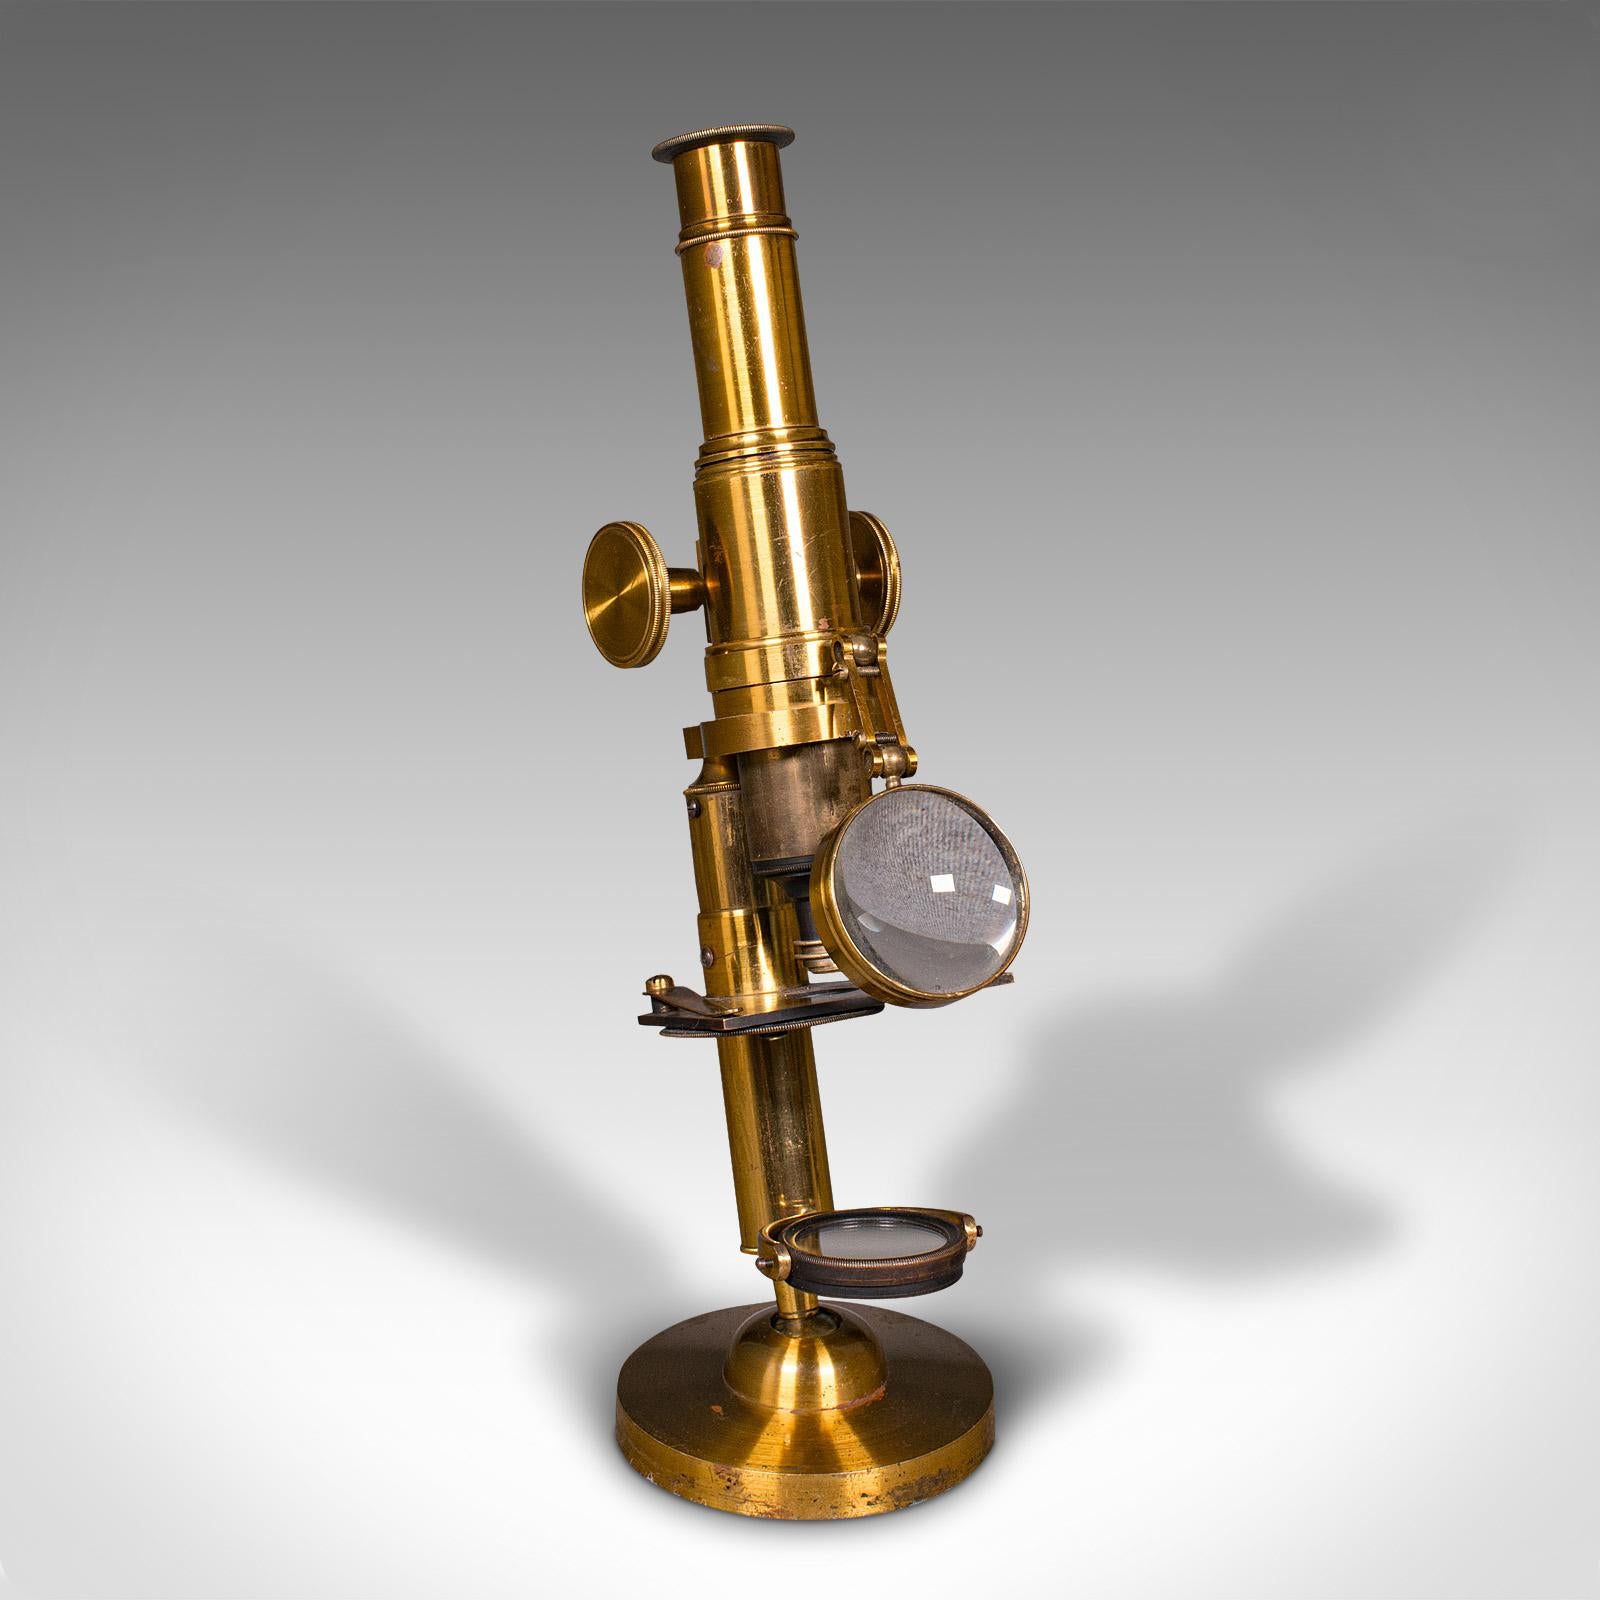 Il s'agit d'un microscope d'érudit ancien en coffret. Instrument scientifique anglais en laiton, datant du début du 20e siècle, vers 1920.

Fascinant microscope en coffret avec fonction articulée distinctive
Présente une patine d'usage désirable et